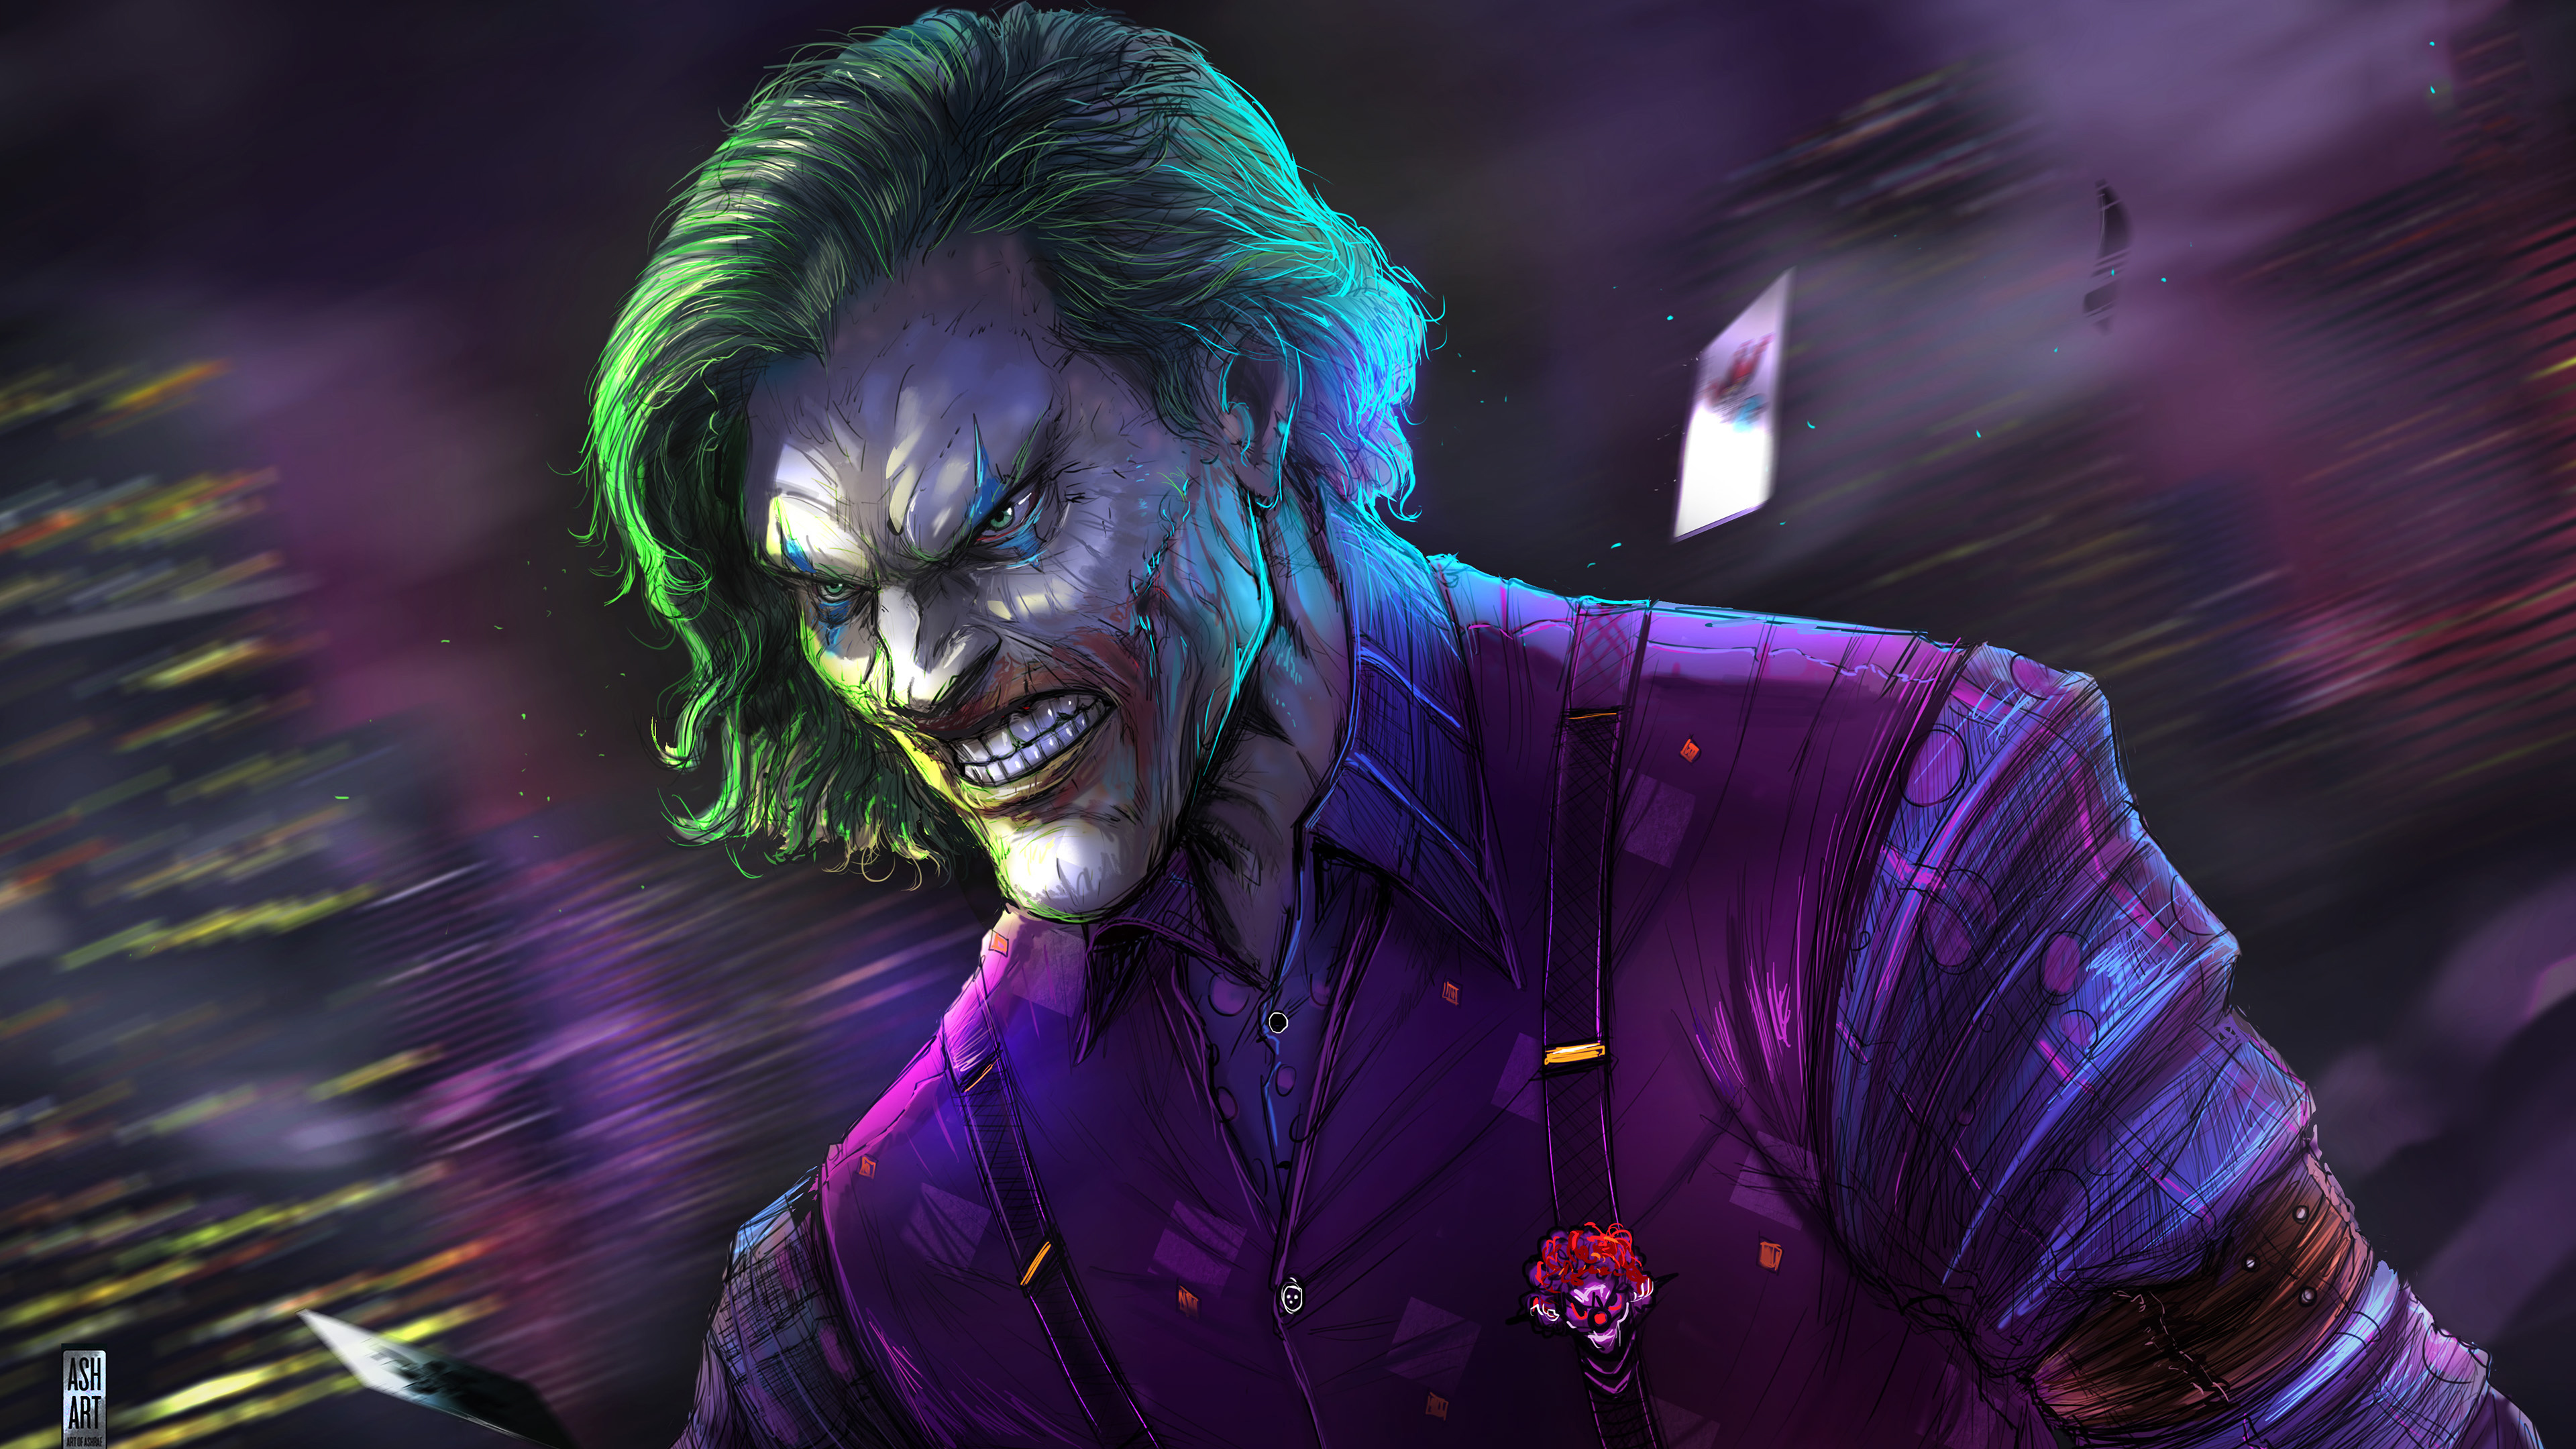  Joker 4k  Ultra HD Wallpaper Background Image 3840x2160 